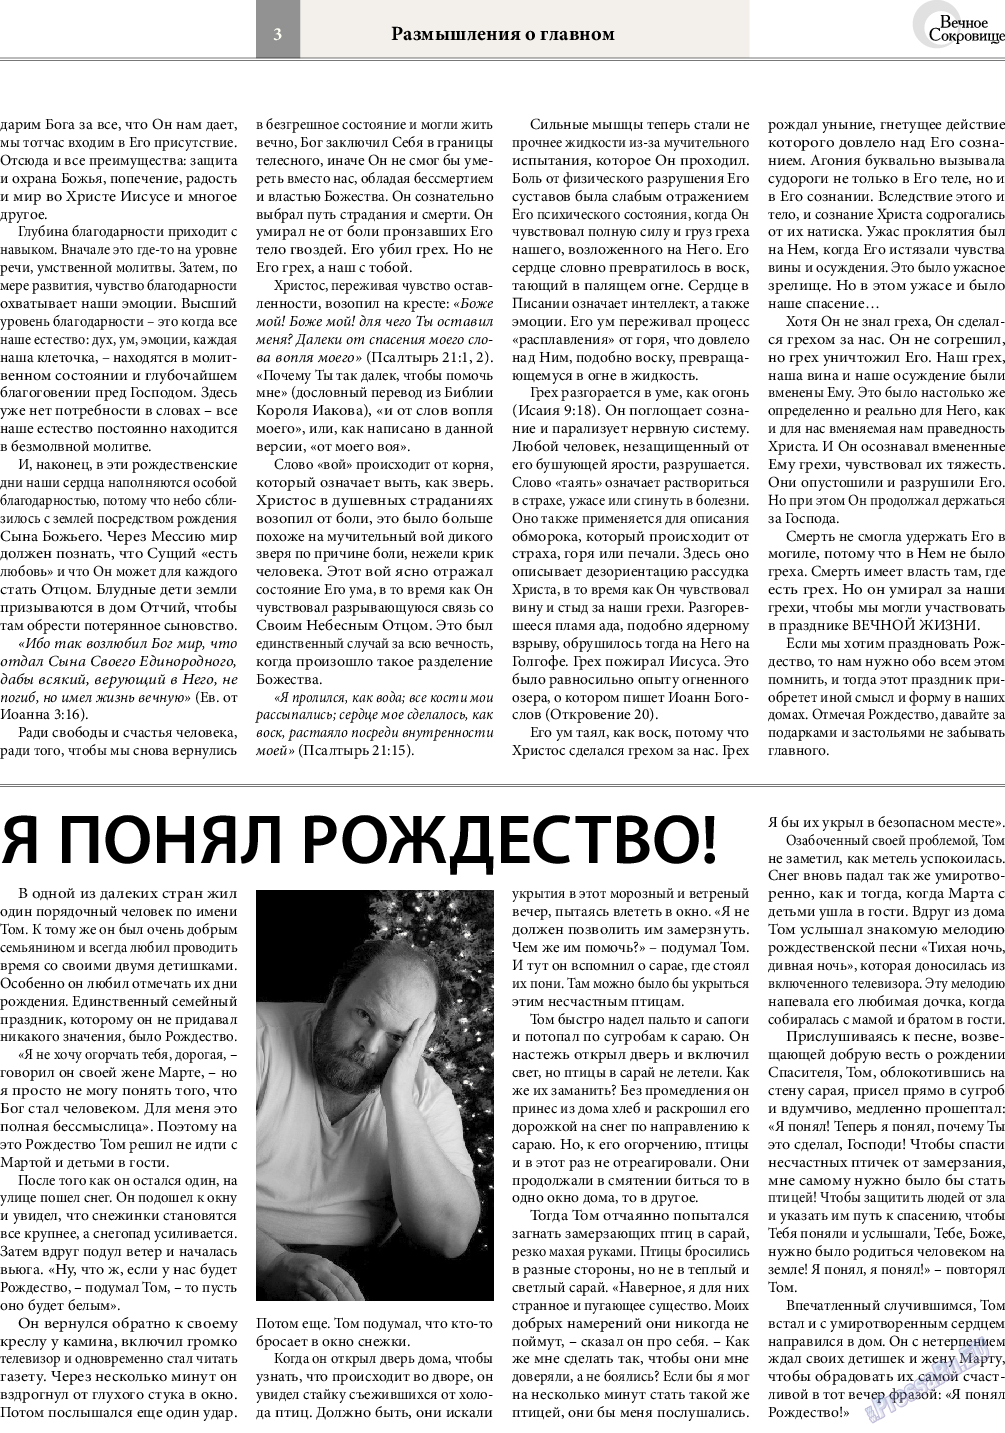 Вечное сокровище (газета). 2015 год, номер 6, стр. 3